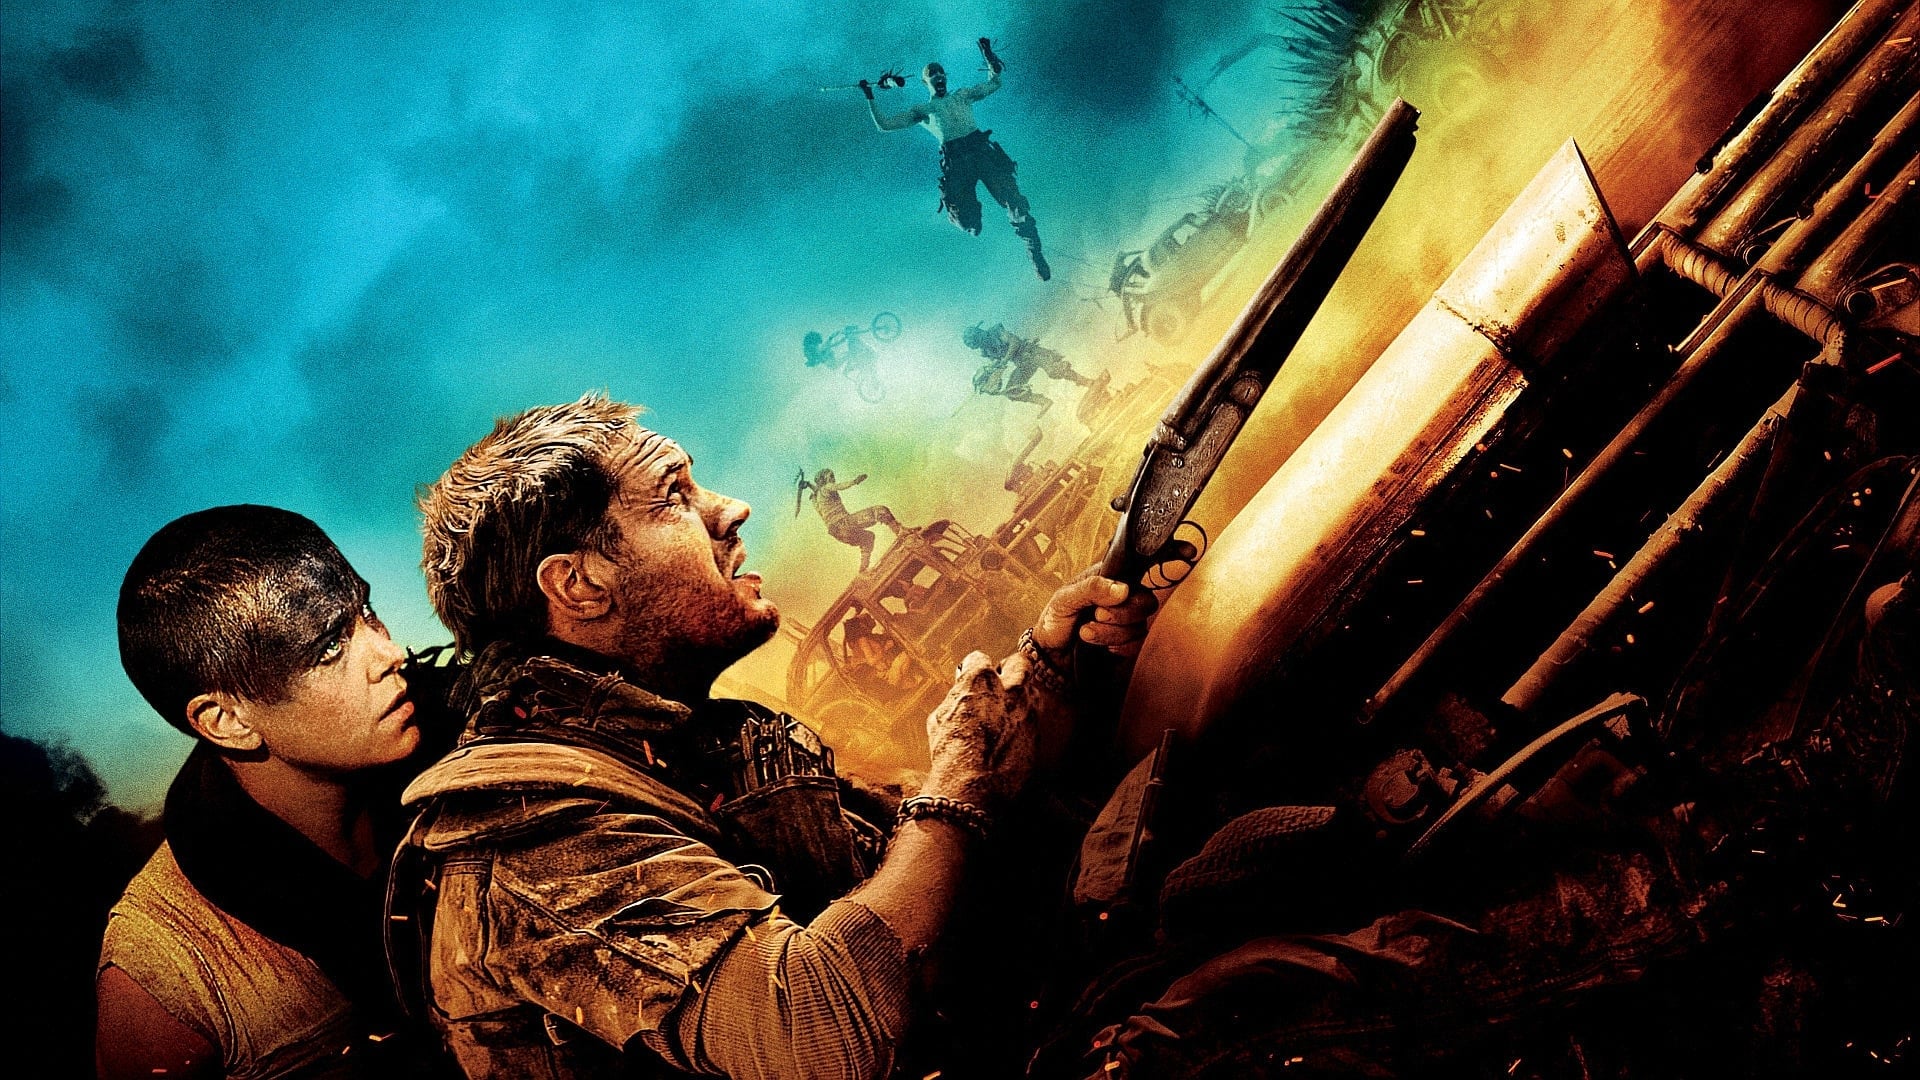 Image du film Mad Max : Fury Road nddyl7bcazob7zvy8vxbycls4ssjpg